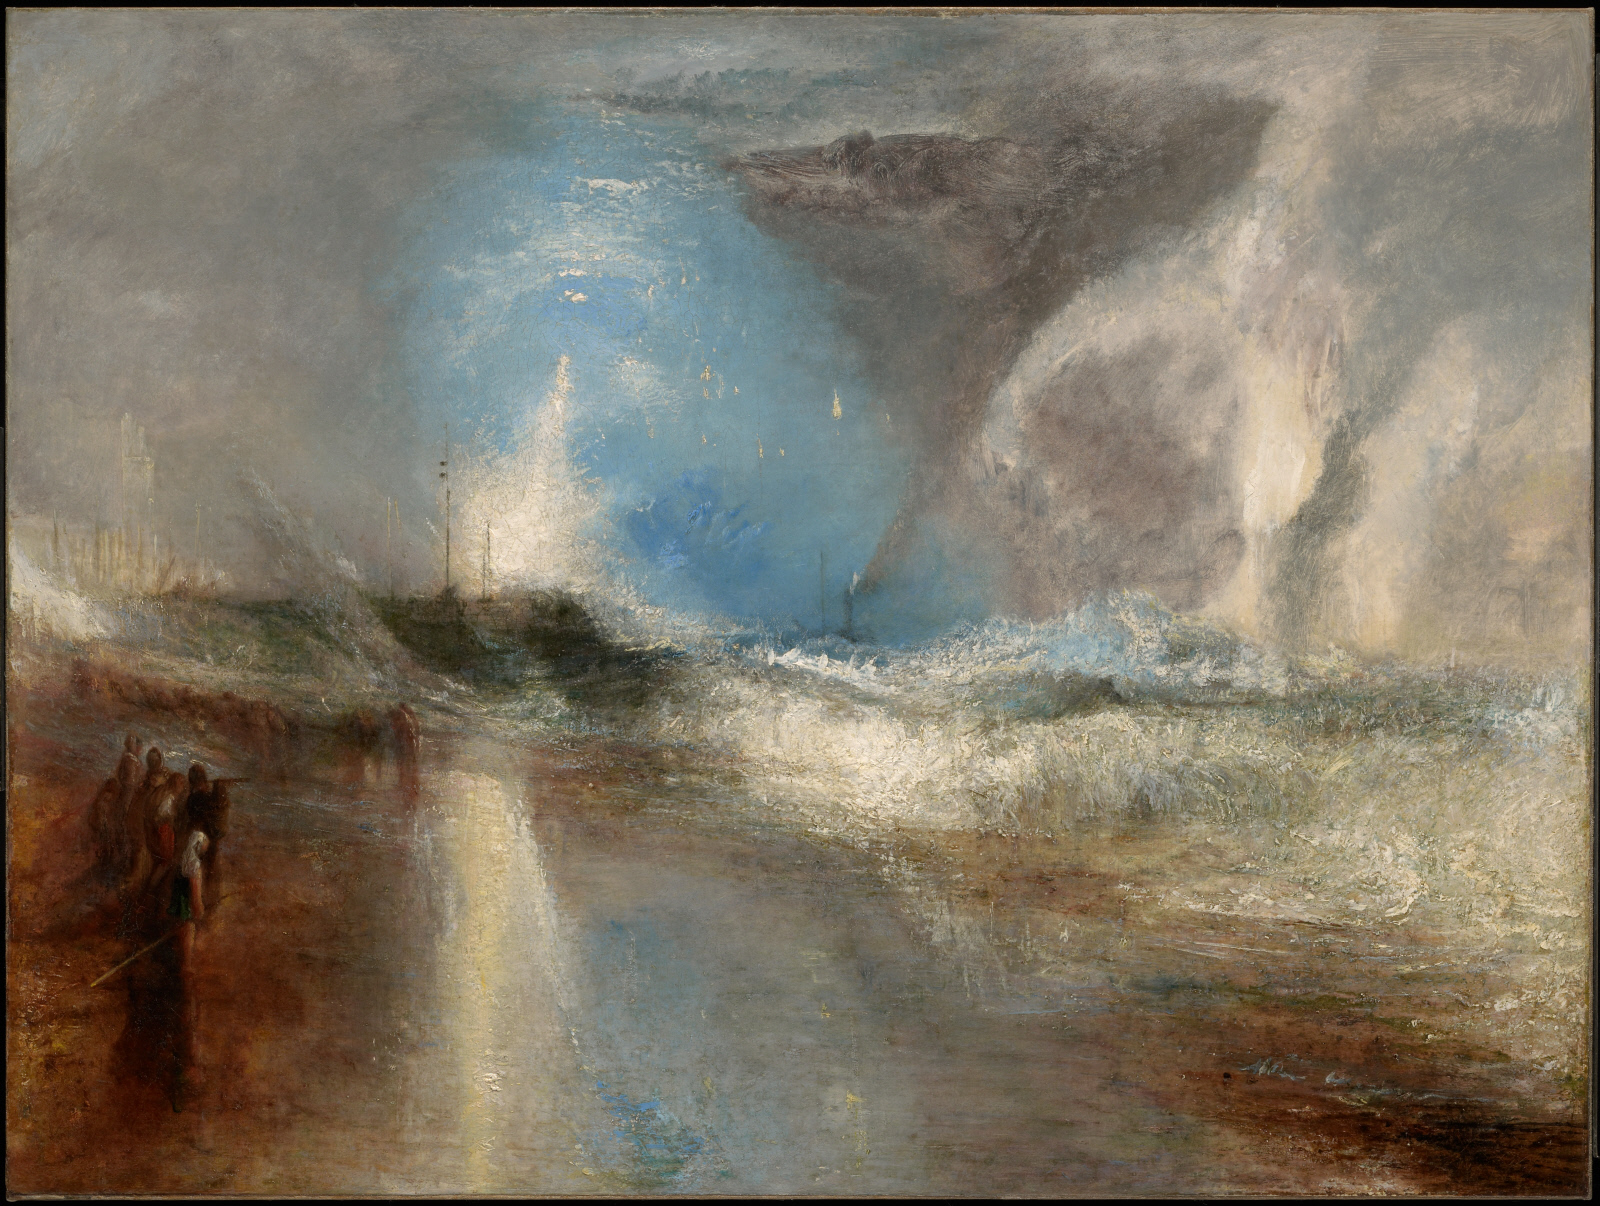 浅瀬の蒸気船に警告するのろしと青い光 by Joseph Mallord William Turner - 1840年 - 92.1 x 122.2 cm 